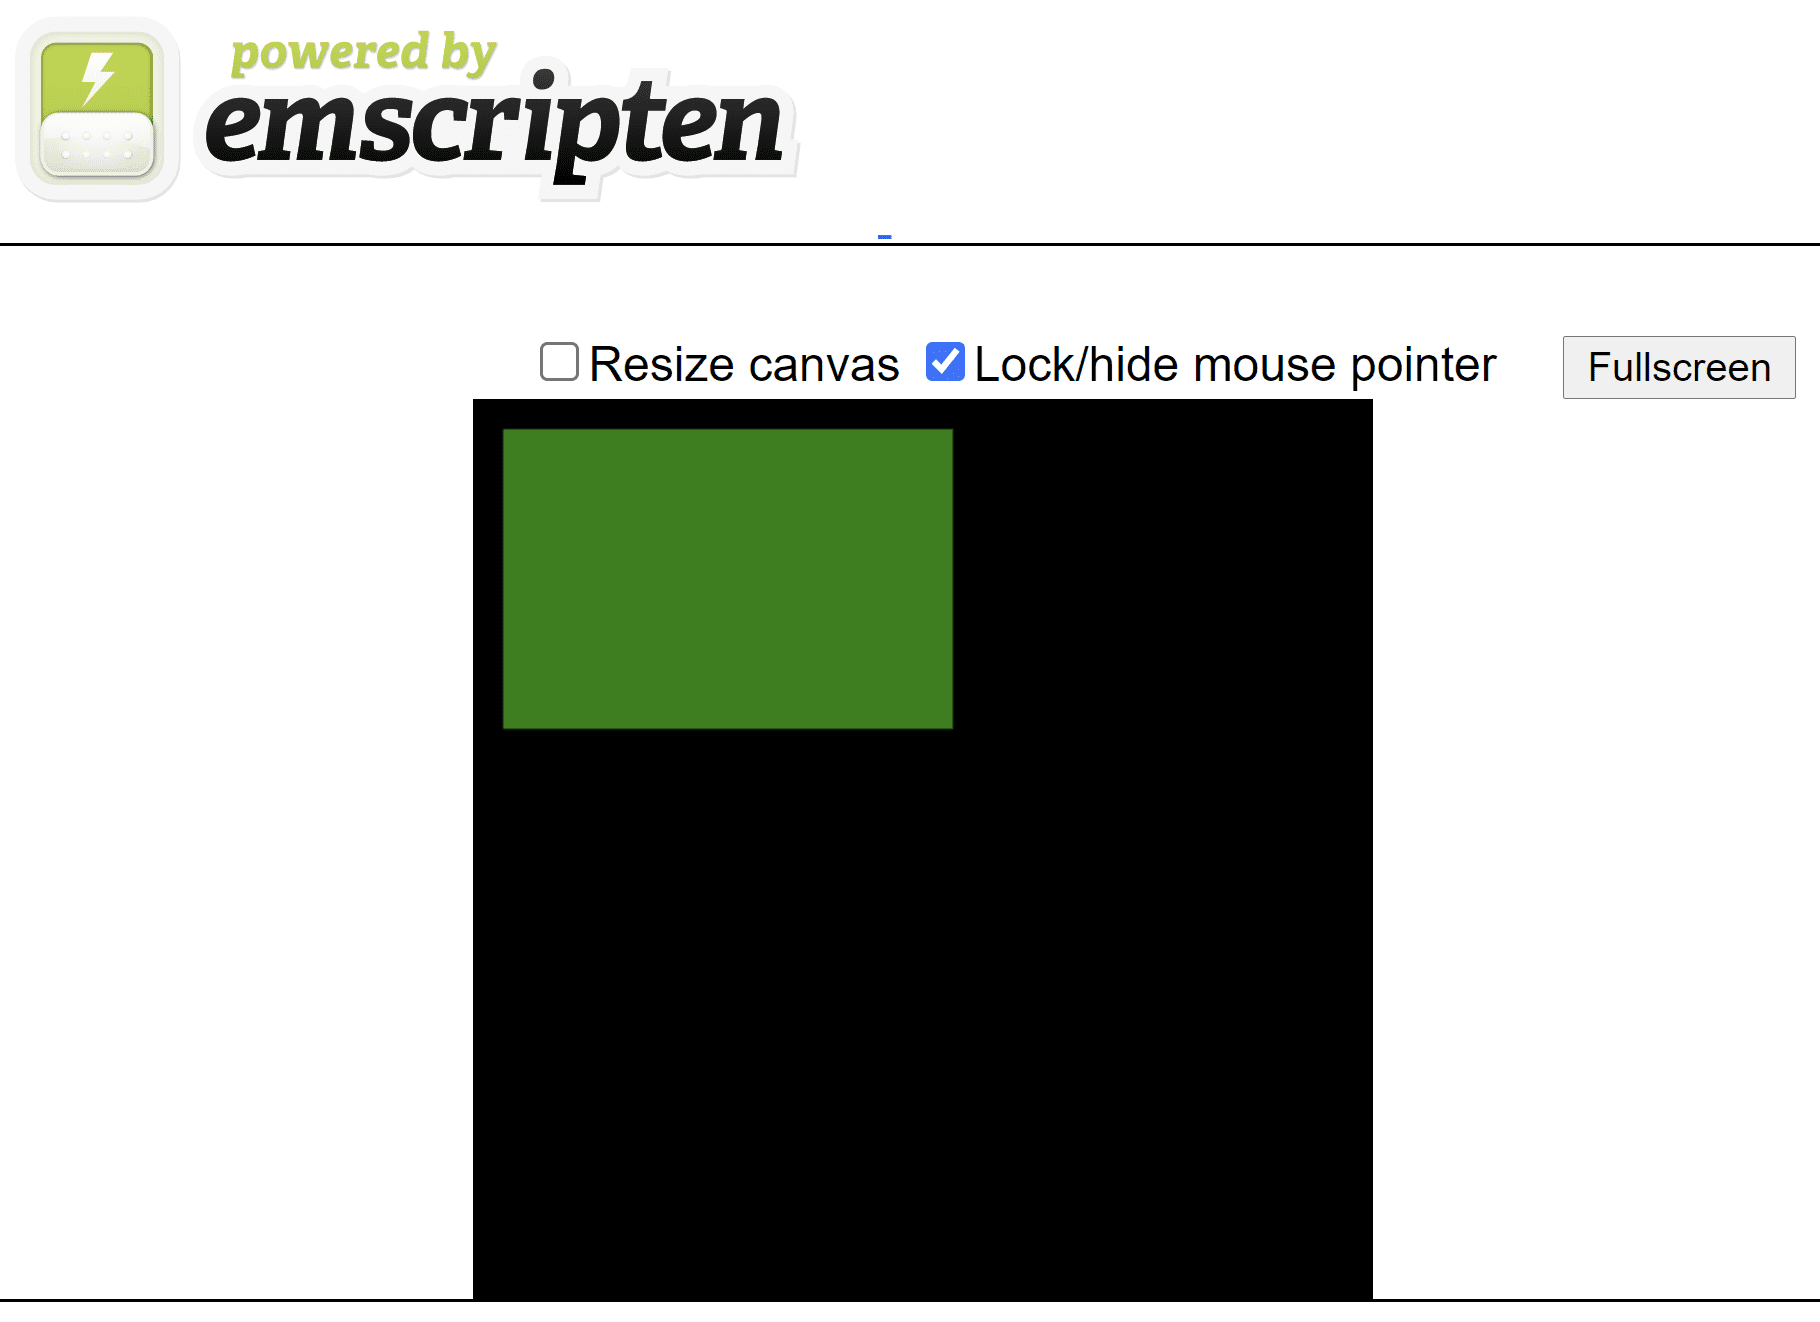 หน้า HTML ที่สร้างด้วย Emscripten แสดงสี่เหลี่ยมผืนผ้าสีเขียวบนผืนผ้าใบสี่เหลี่ยมจัตุรัสสีดำ